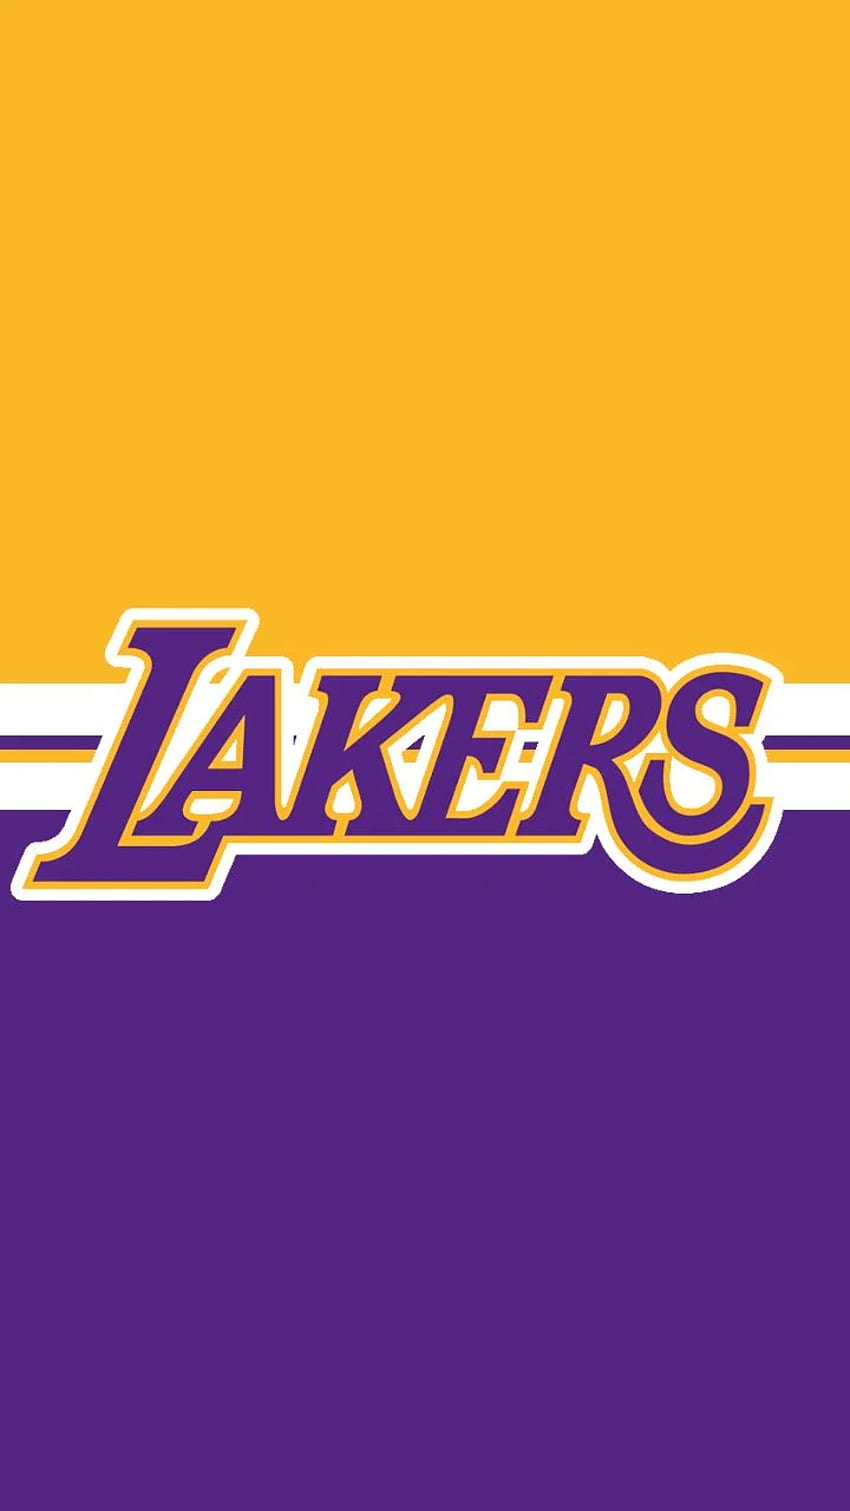 ¡Hizo un móvil de los Lakers! : lakers, LA Lakers iPhone fondo de pantalla del teléfono